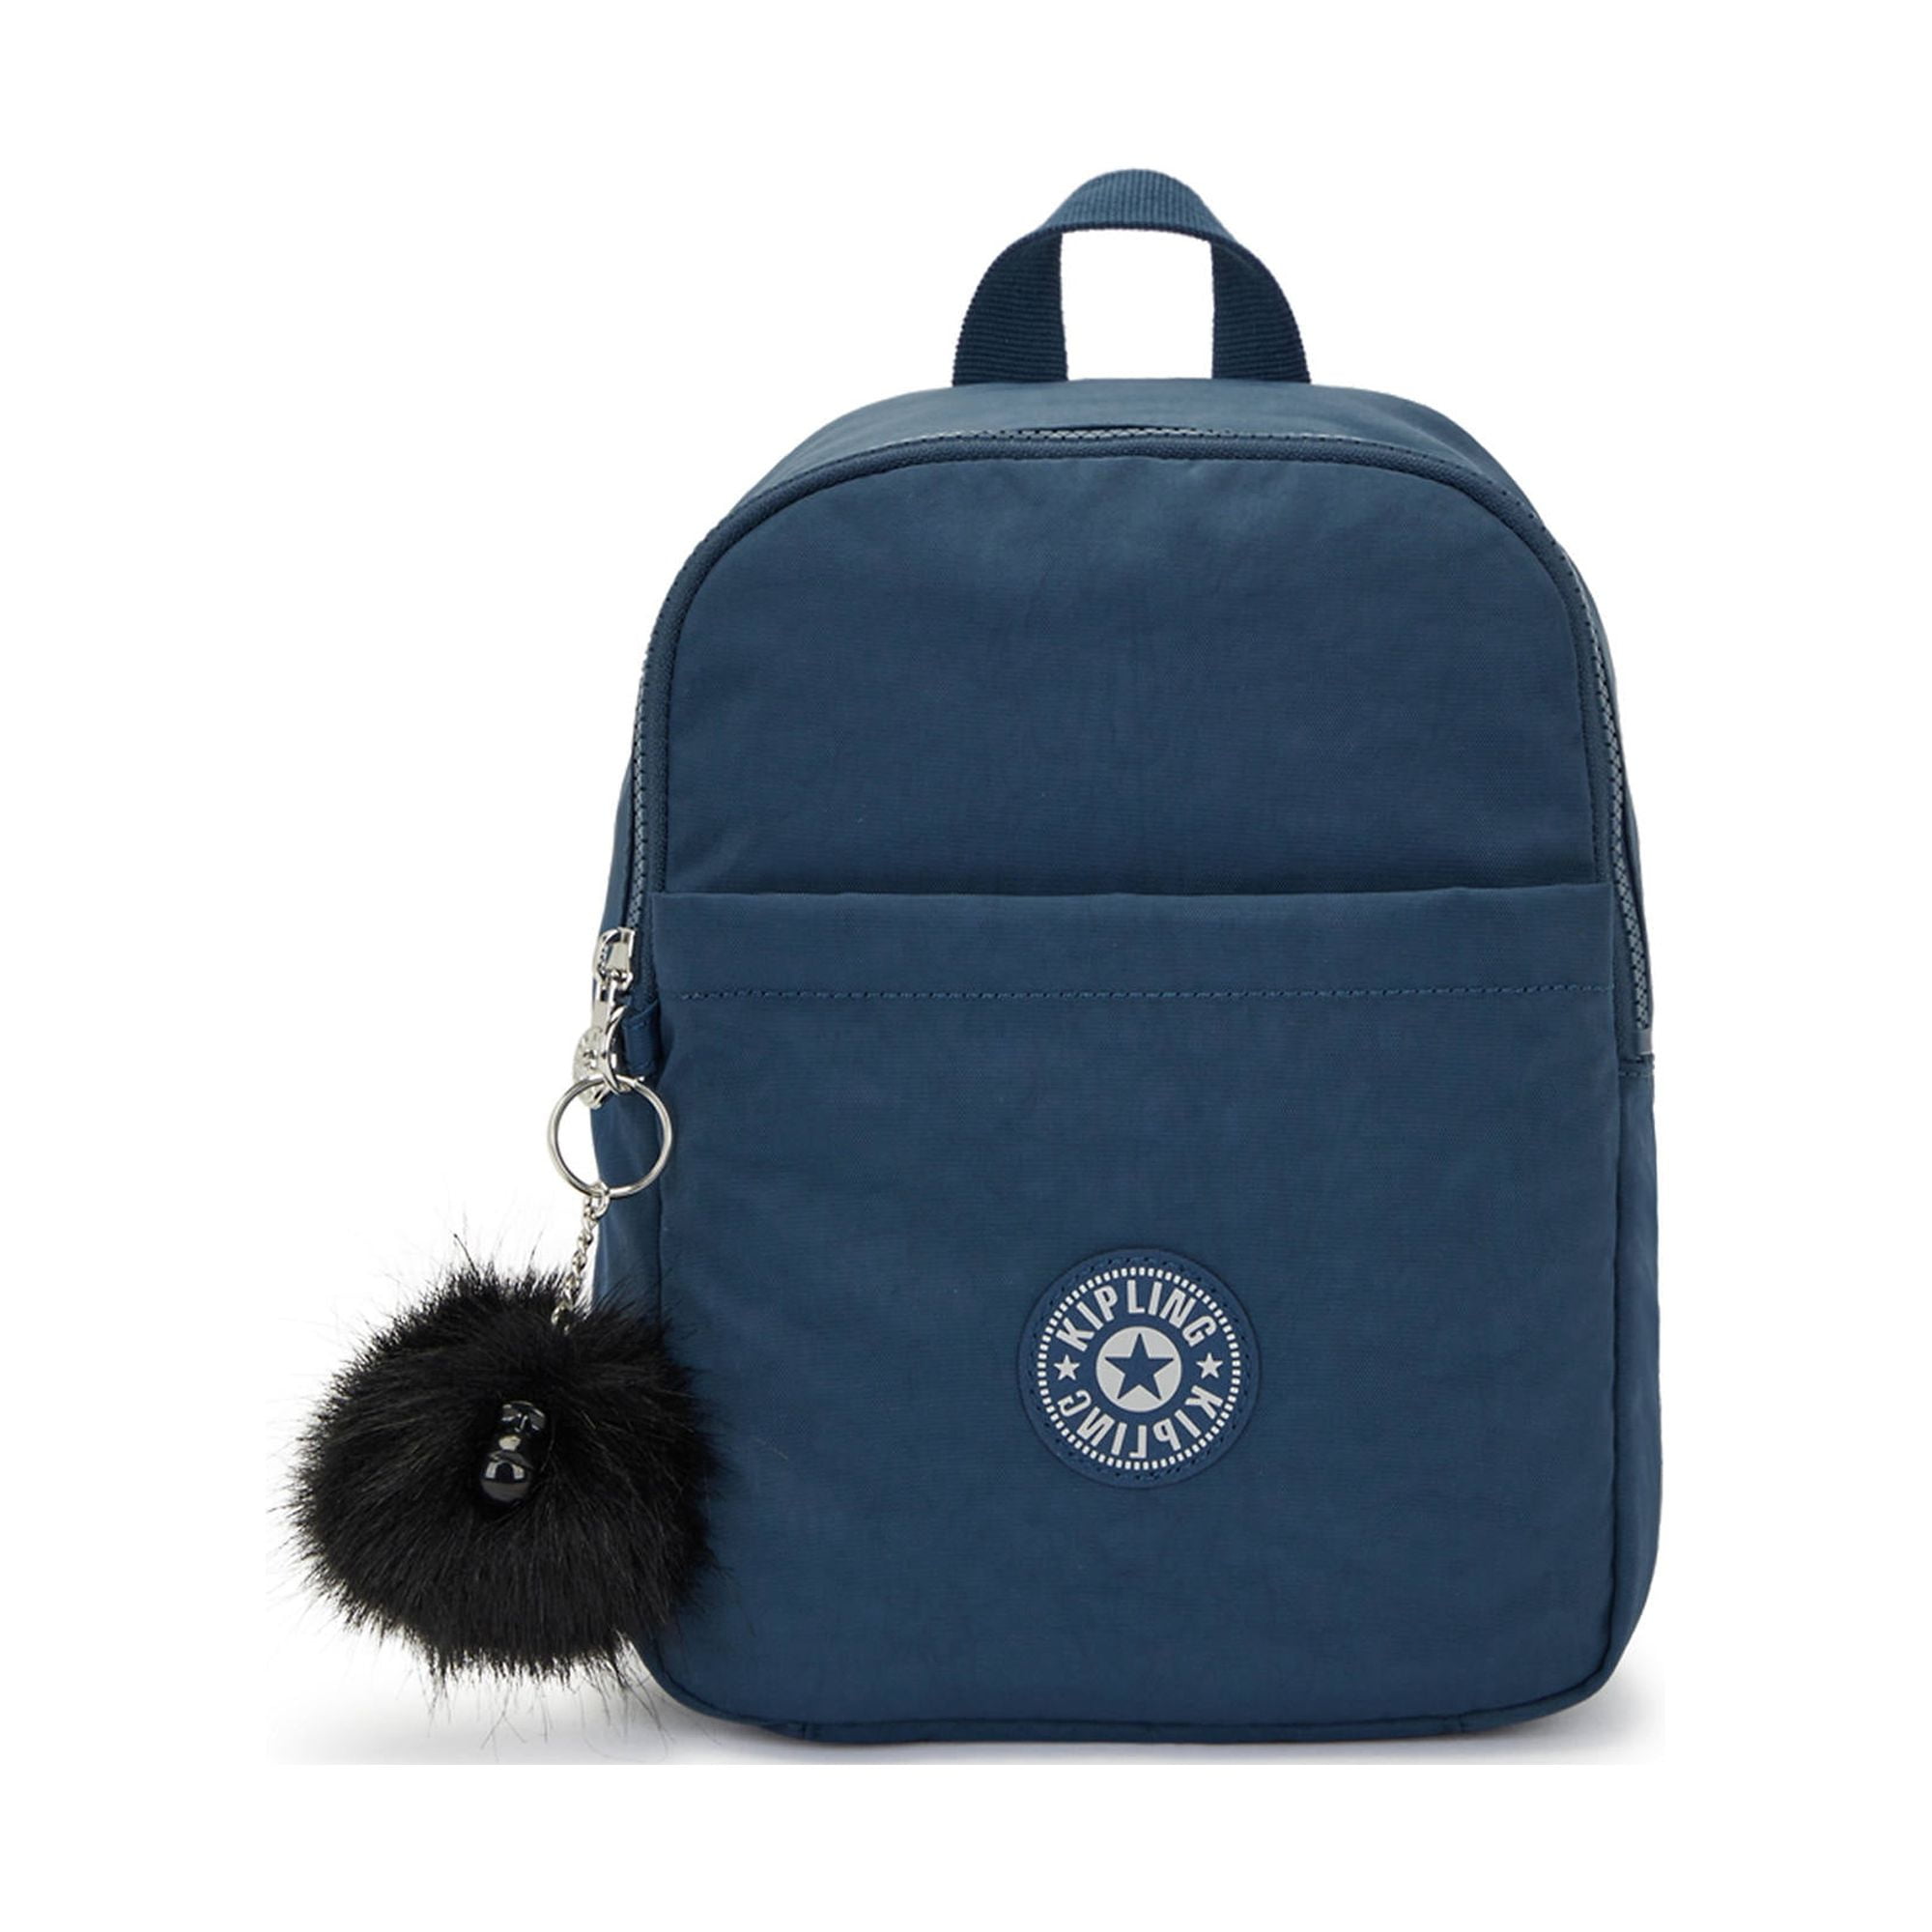 Kipling Marlee Backpack Blue Embrace Gg - Walmart.com